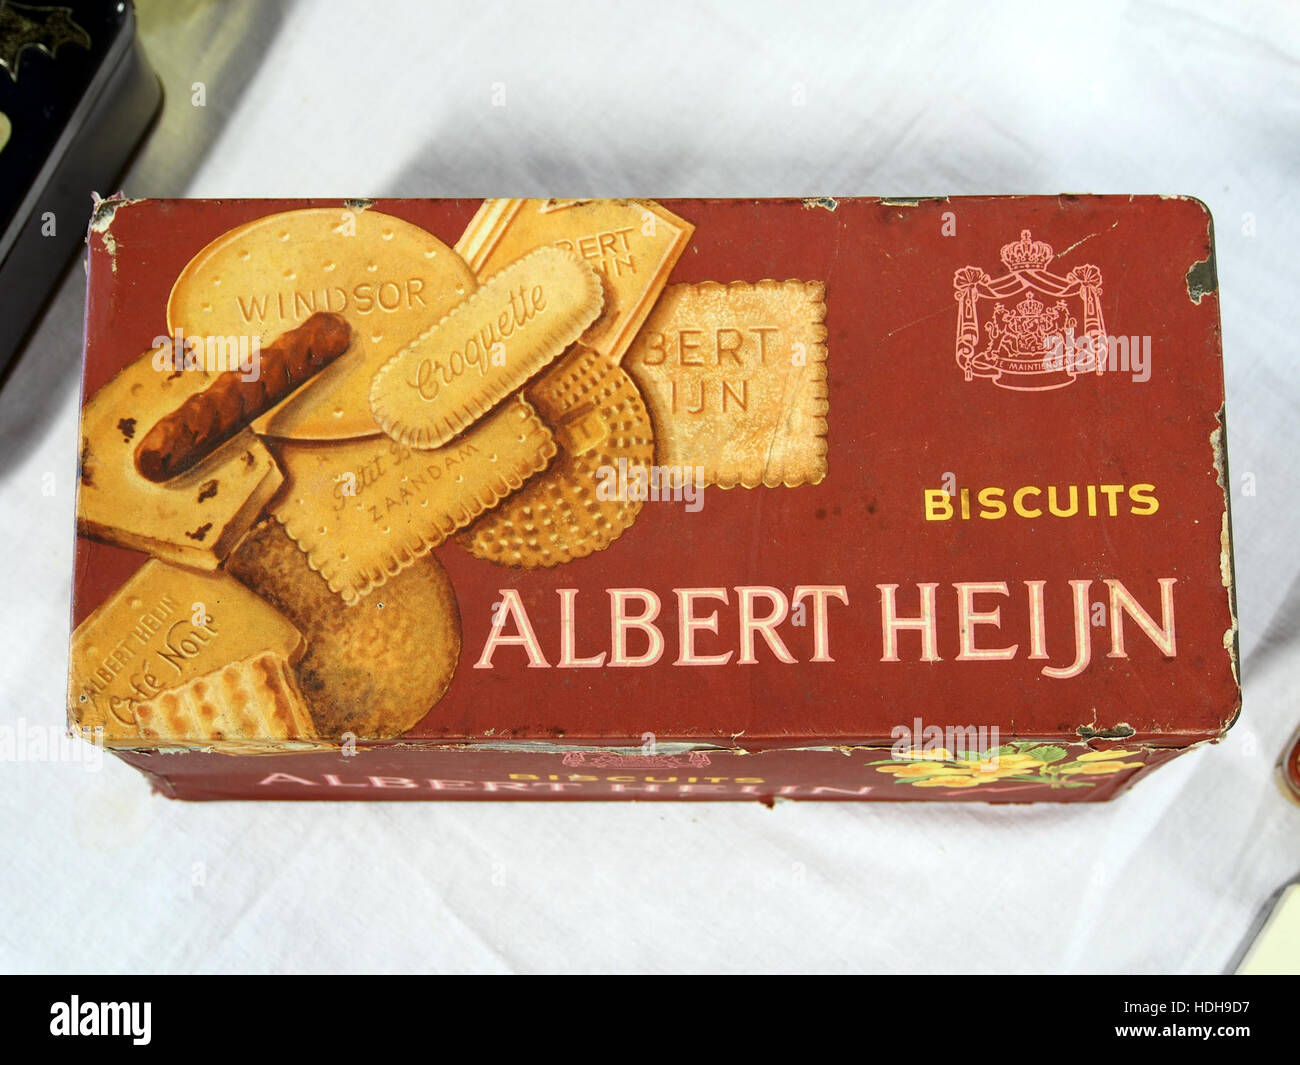 Albert Heijn biscuits blik pic4 Stock Photo